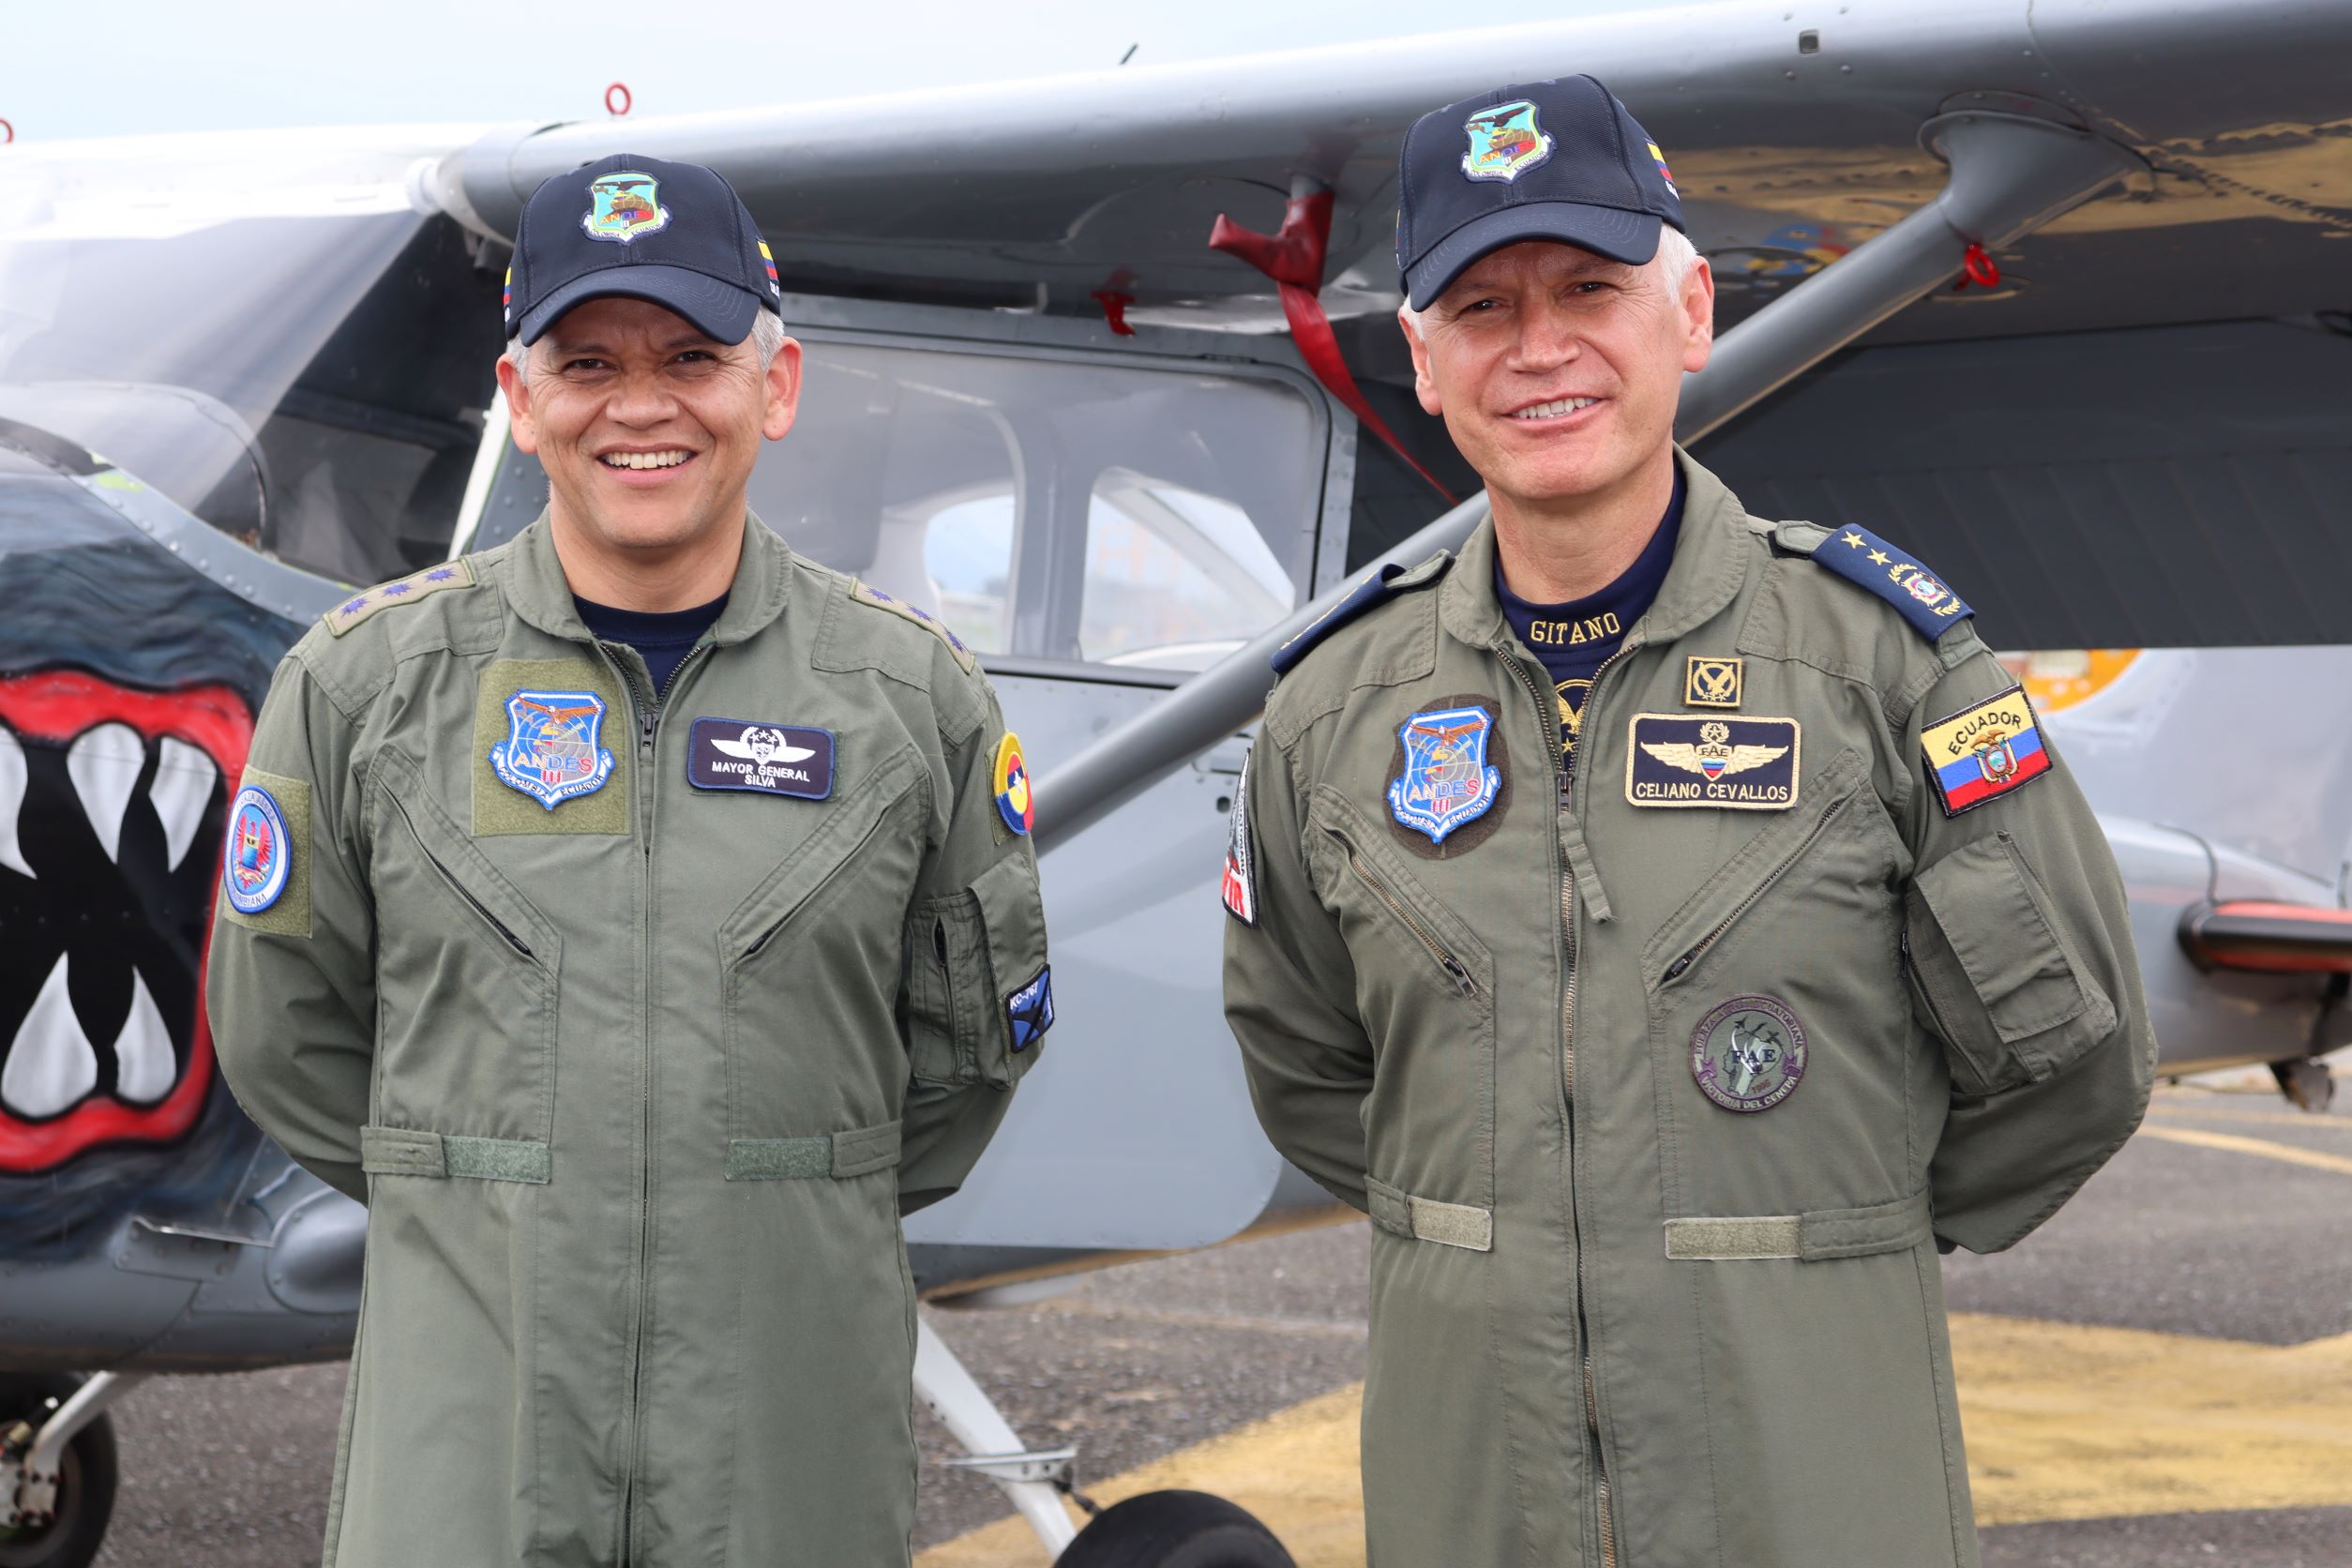 Brigadier General del Ecuador, visitó la EMAVI, lugar donde se formó como piloto militar 